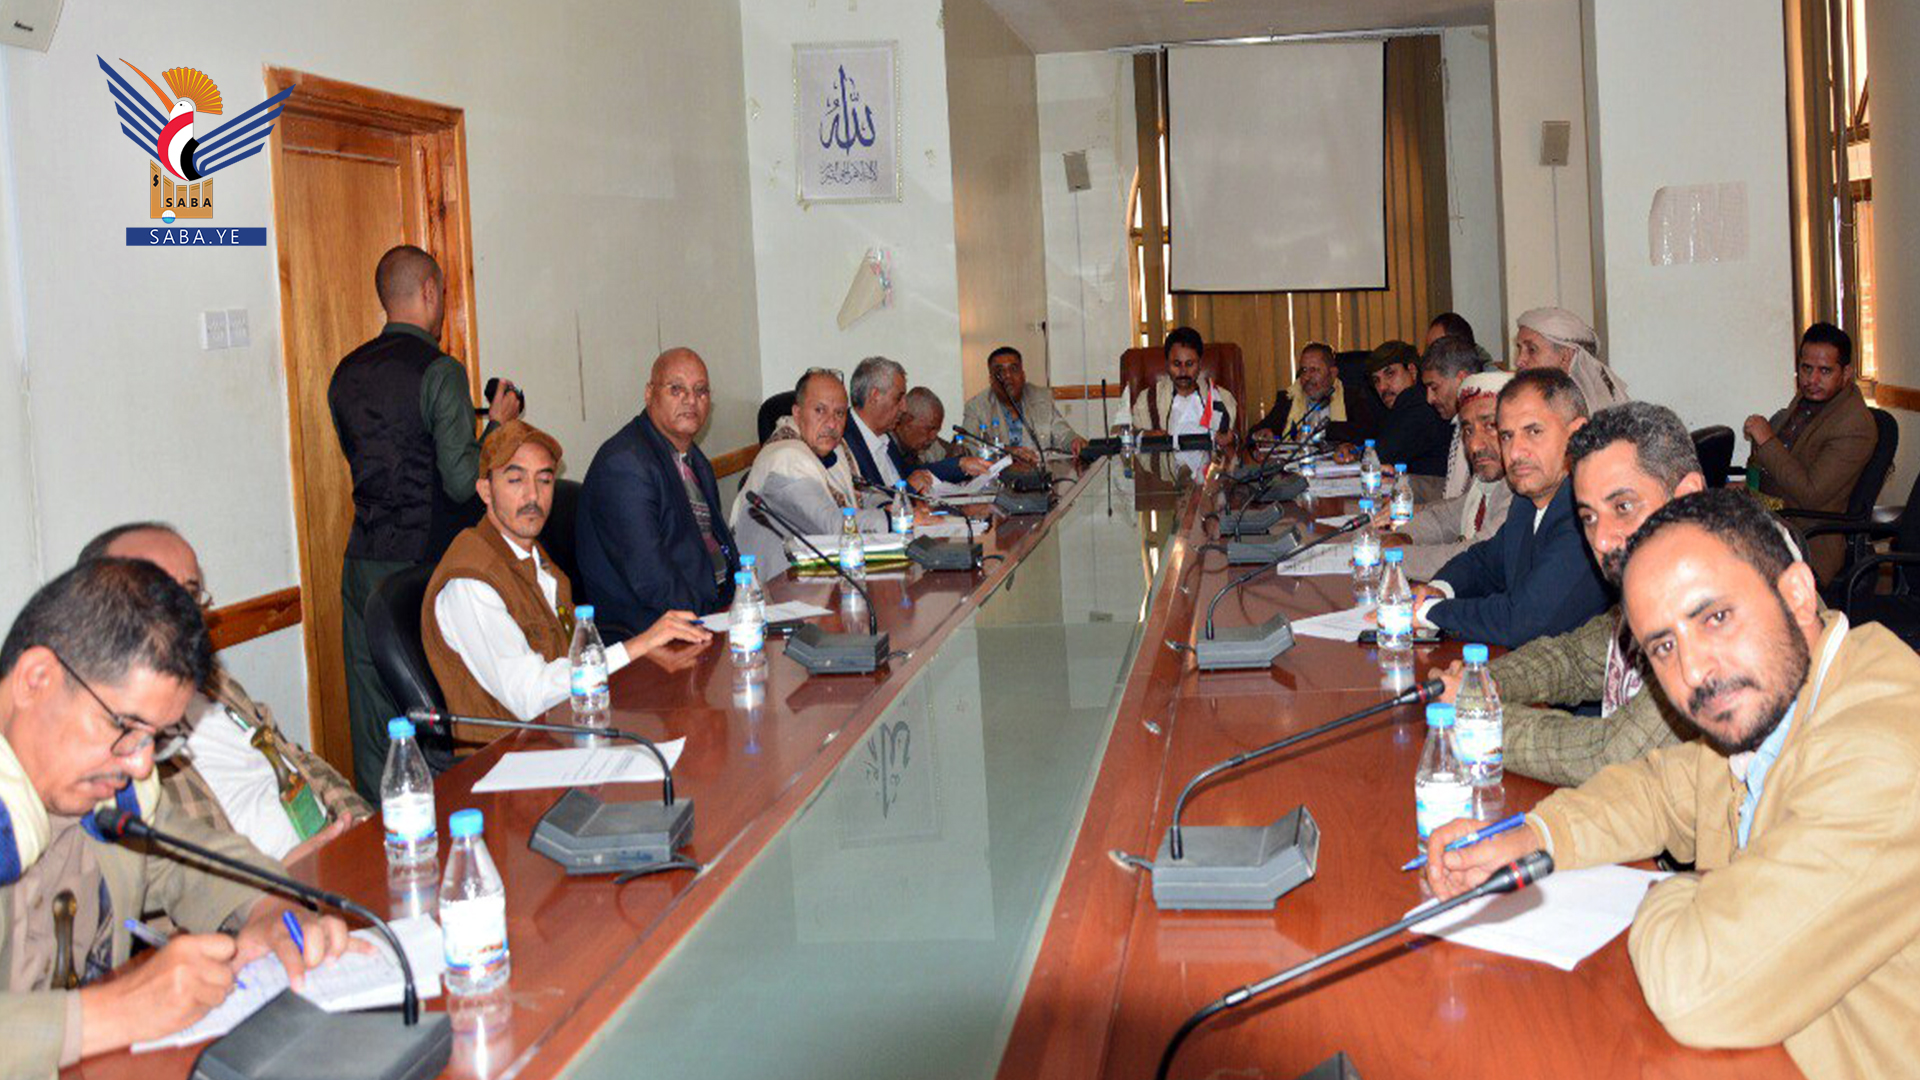 مناقشة أولويات واحتياجات العمل في مديرية صنعاء الجديدة